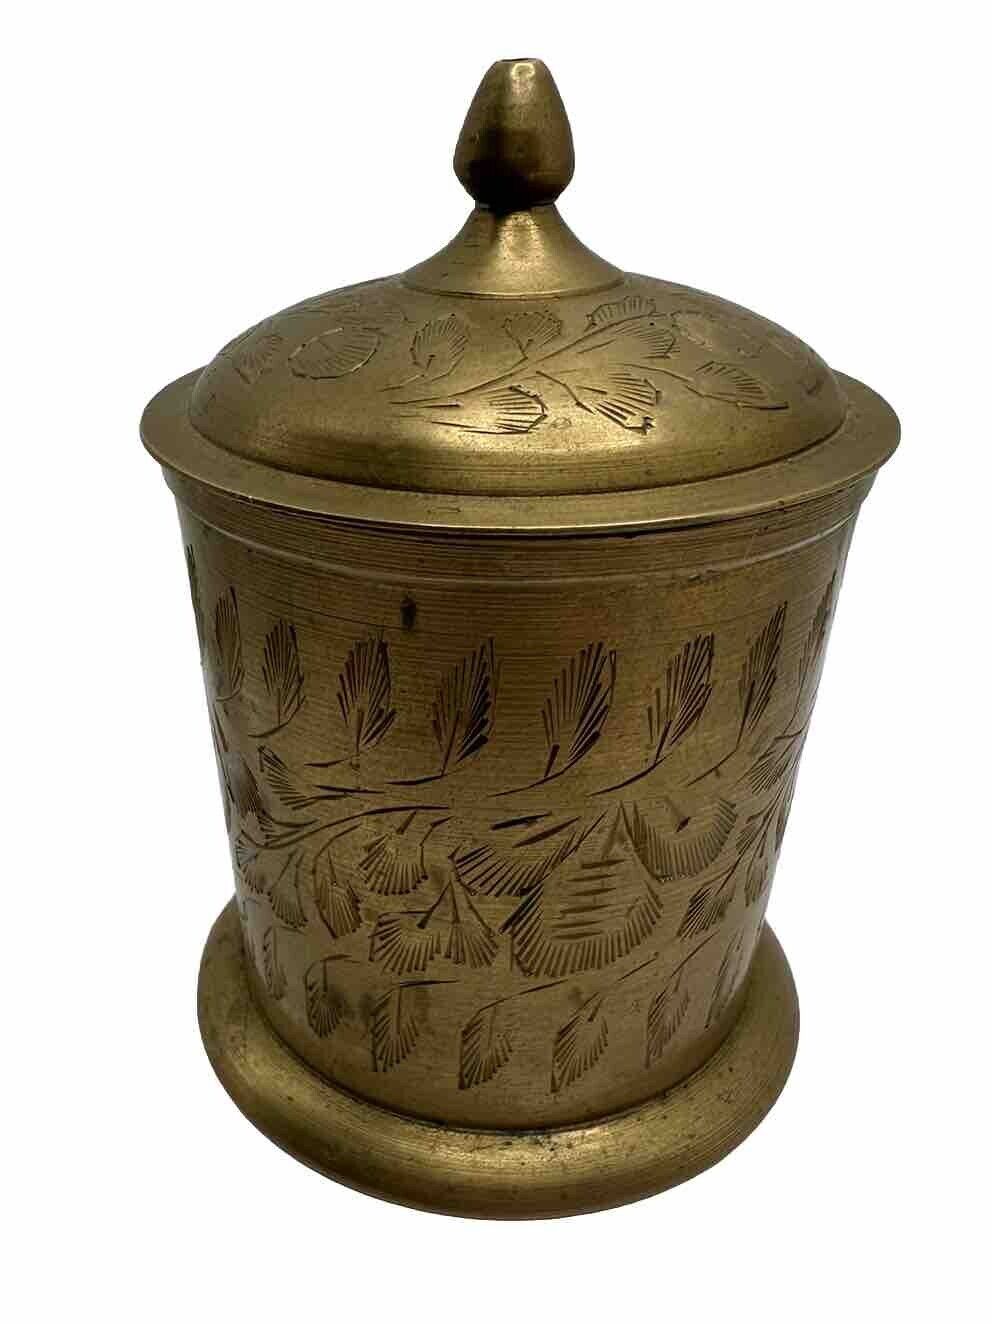 Etched Brass Jar Handmade in India Lidded Canister Vintage VTG 